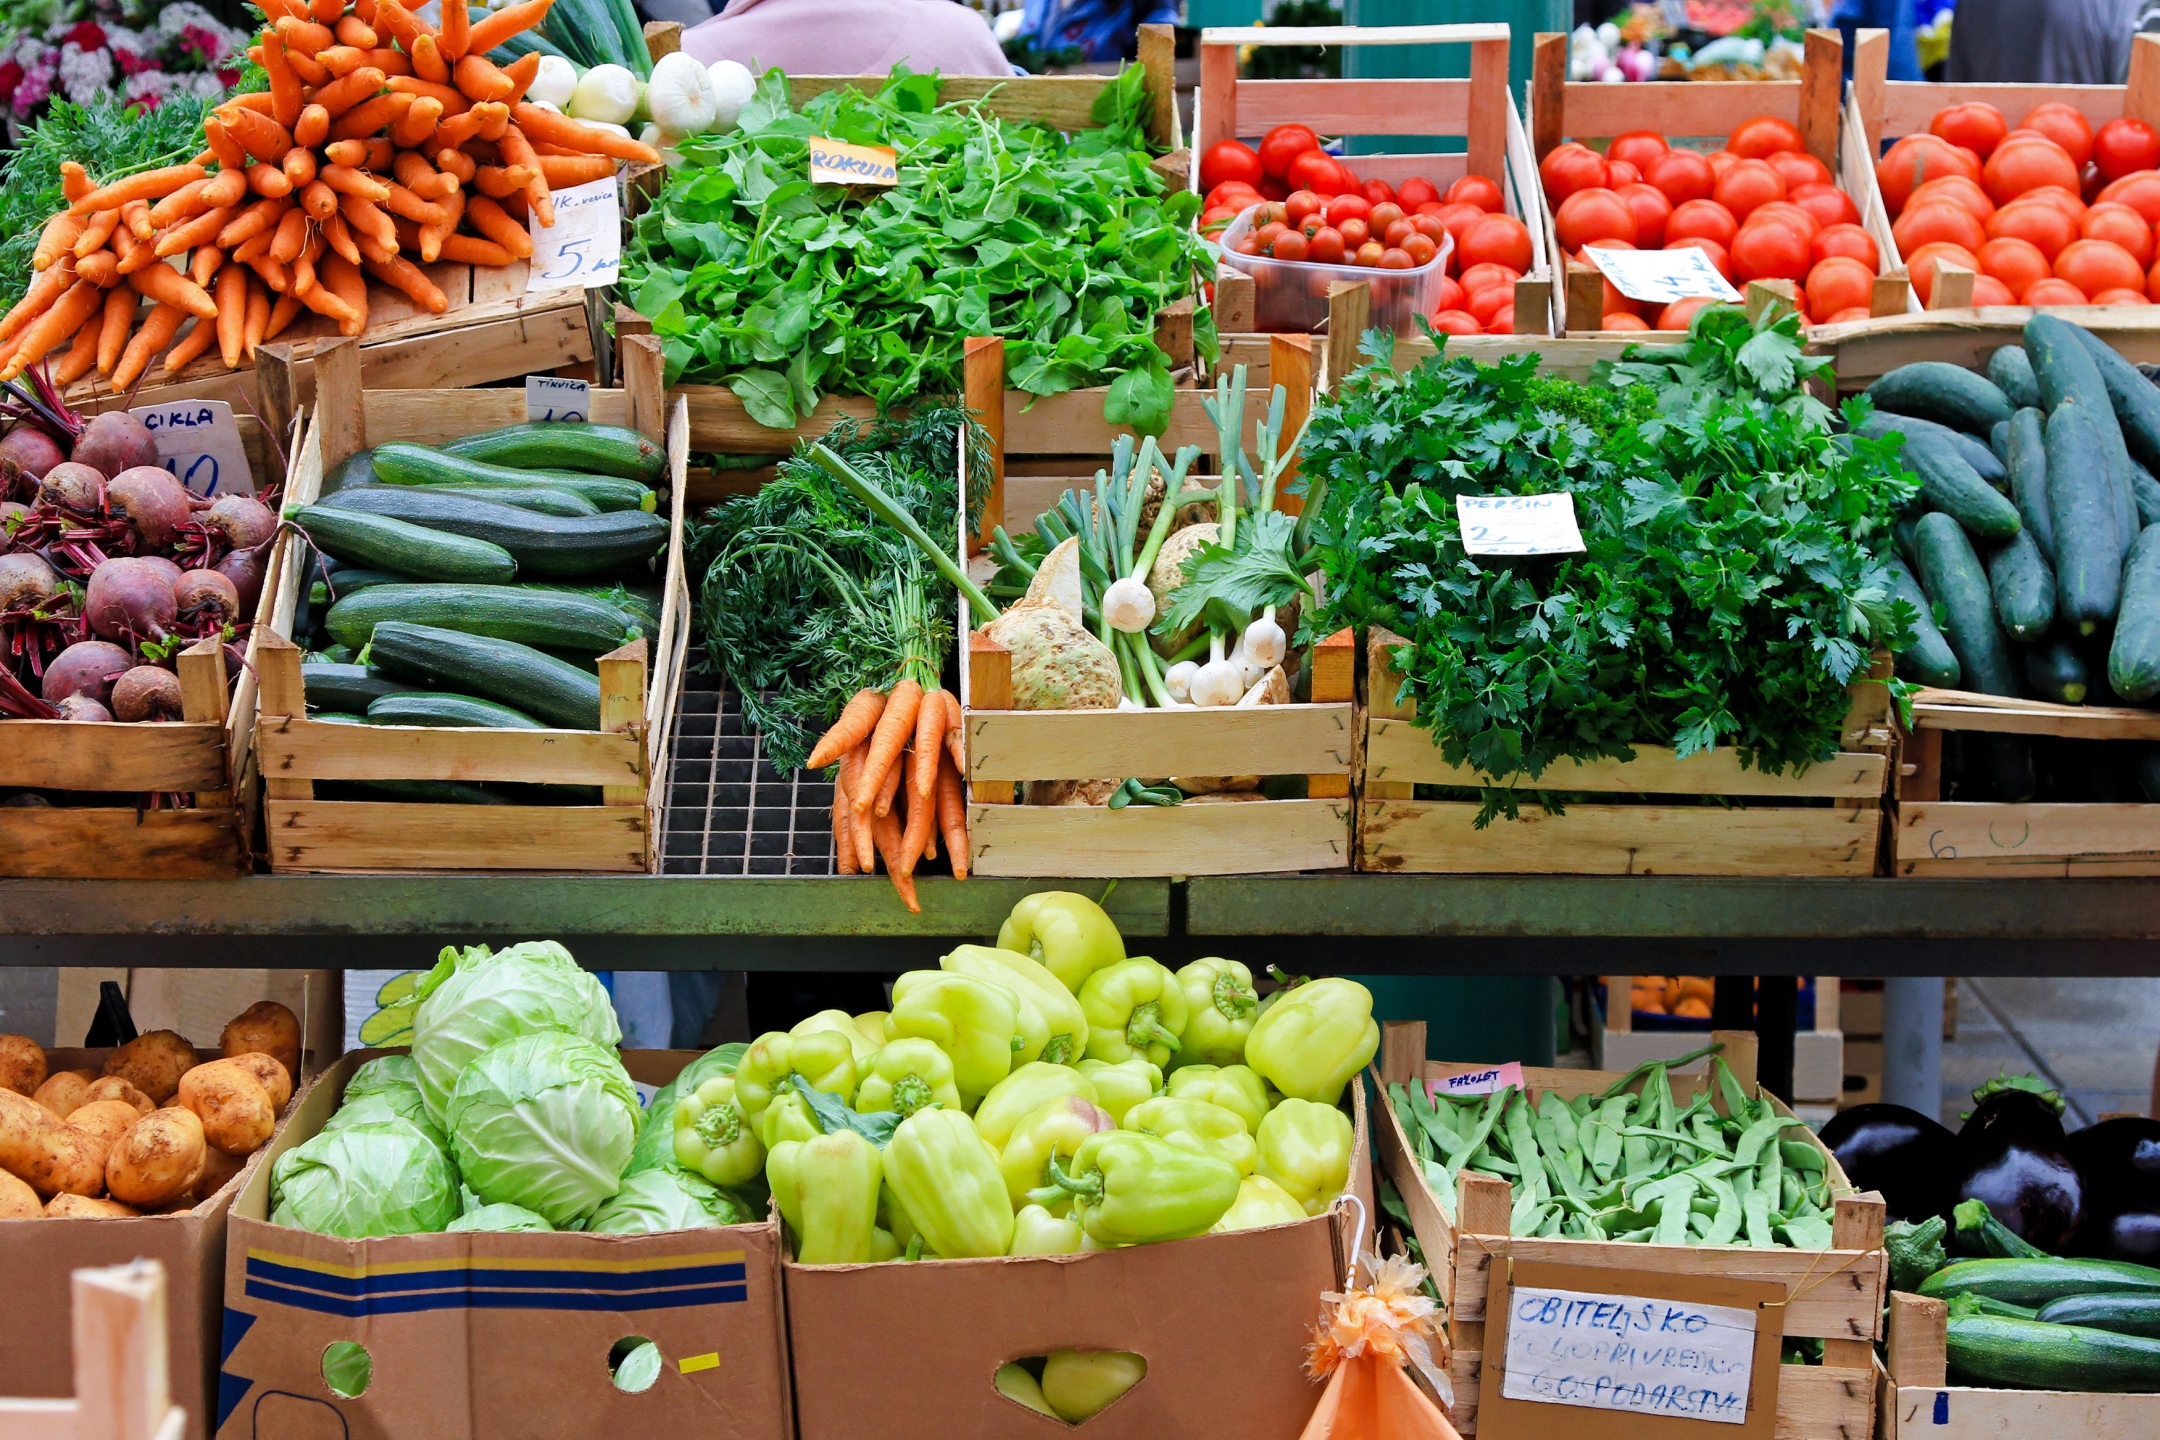 Реклама рынка продуктов. Прилавок с овощами и фруктами. Овощи на рынке. Ассортимент фруктов и овощей. Овощи и фрукты на рынке.